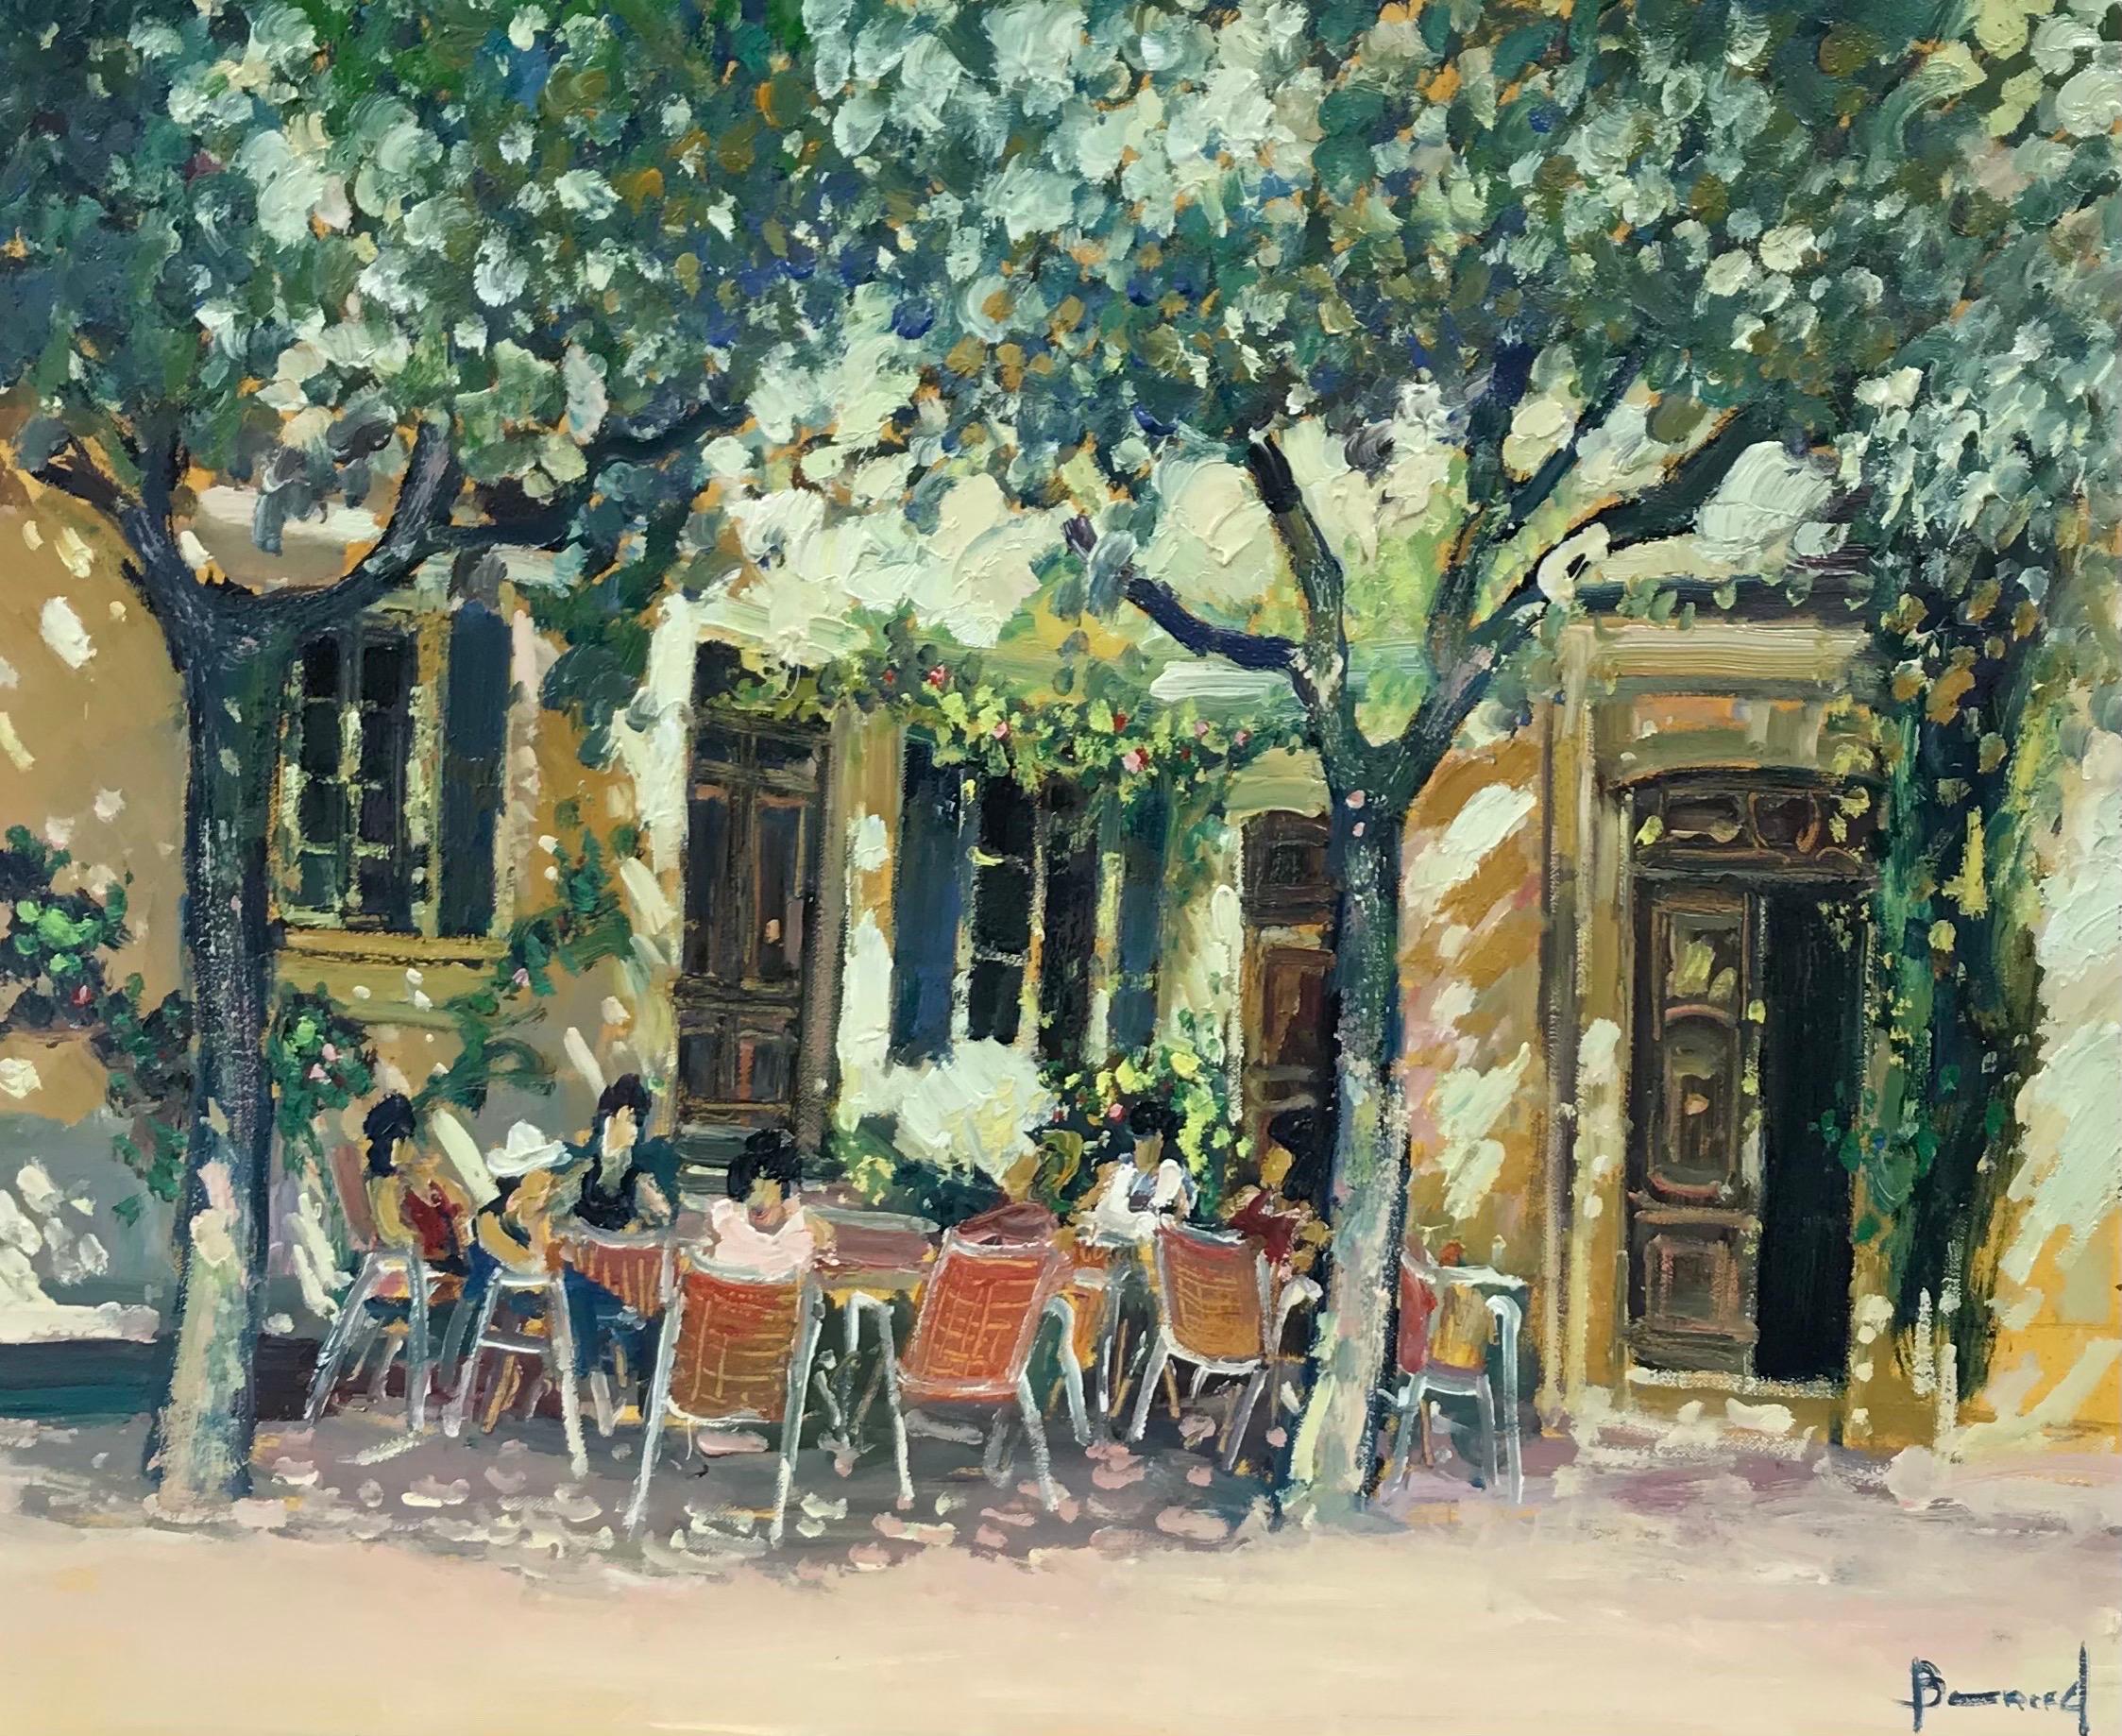 Landscape Painting Guy Benard - Tableau de café impressionniste français à l'huile d'une scène d'un café avec des personnages en Provence